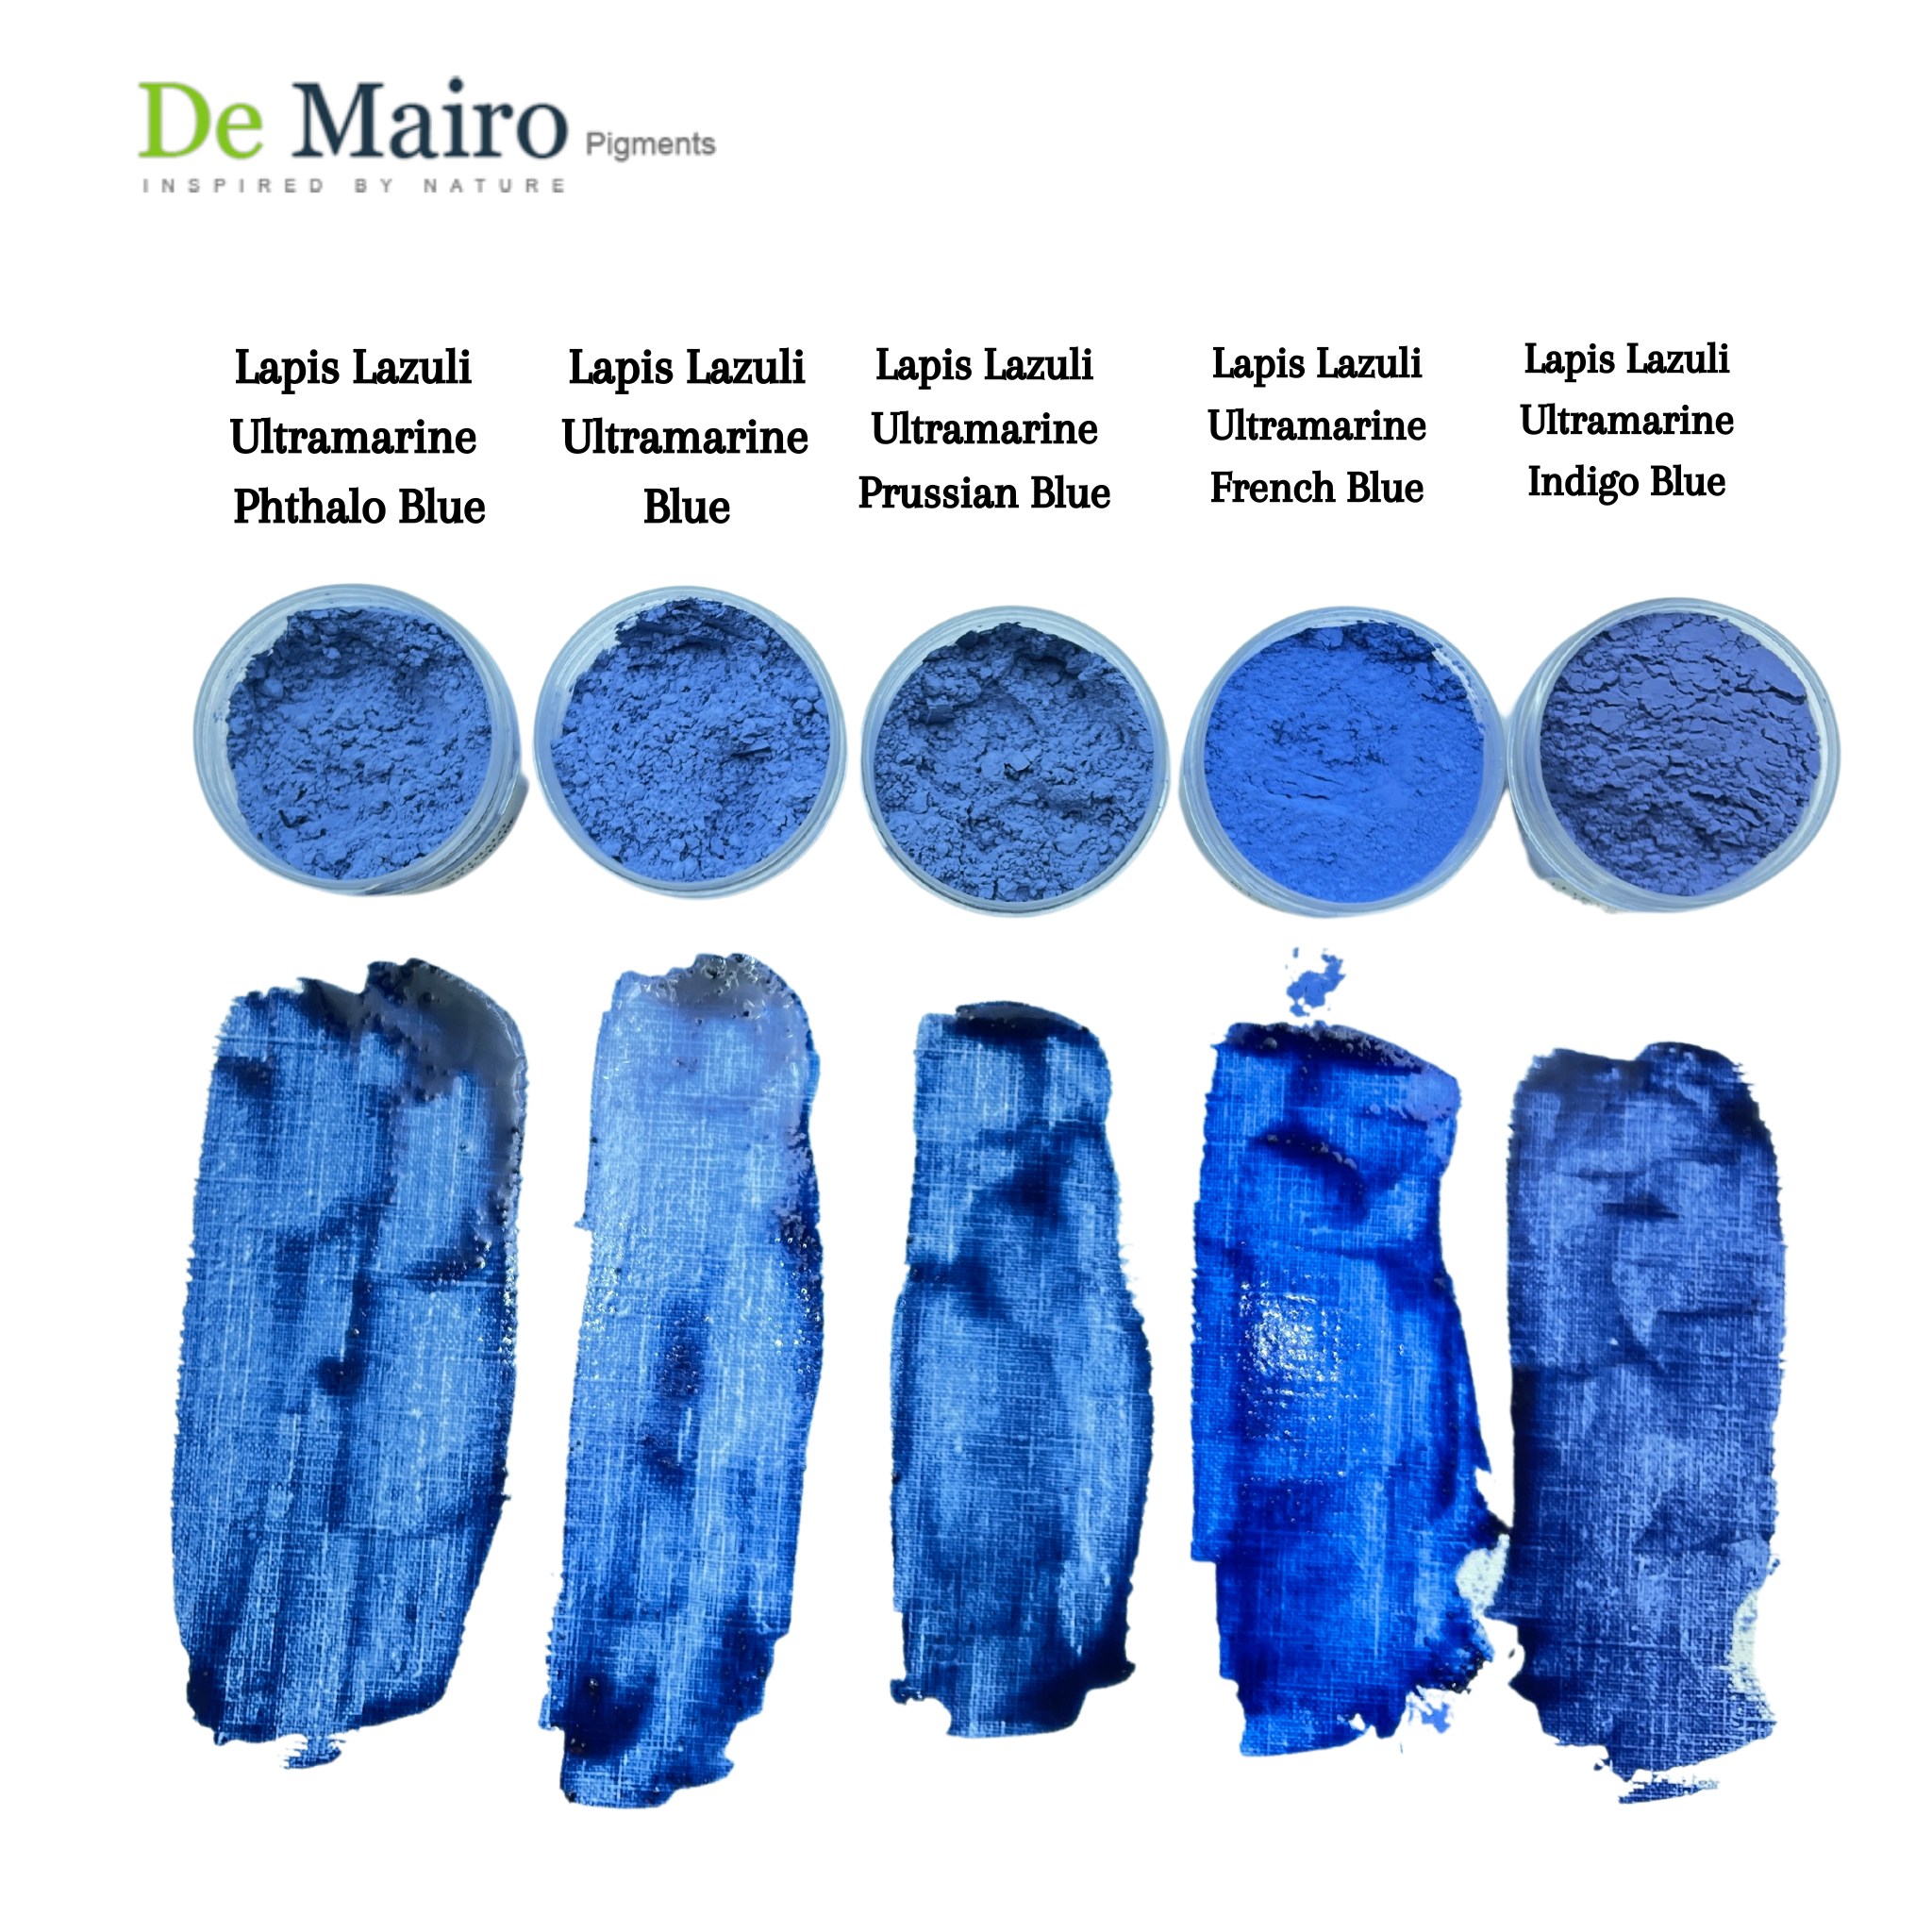 Lapis Lazuli Ultramarine Pigment